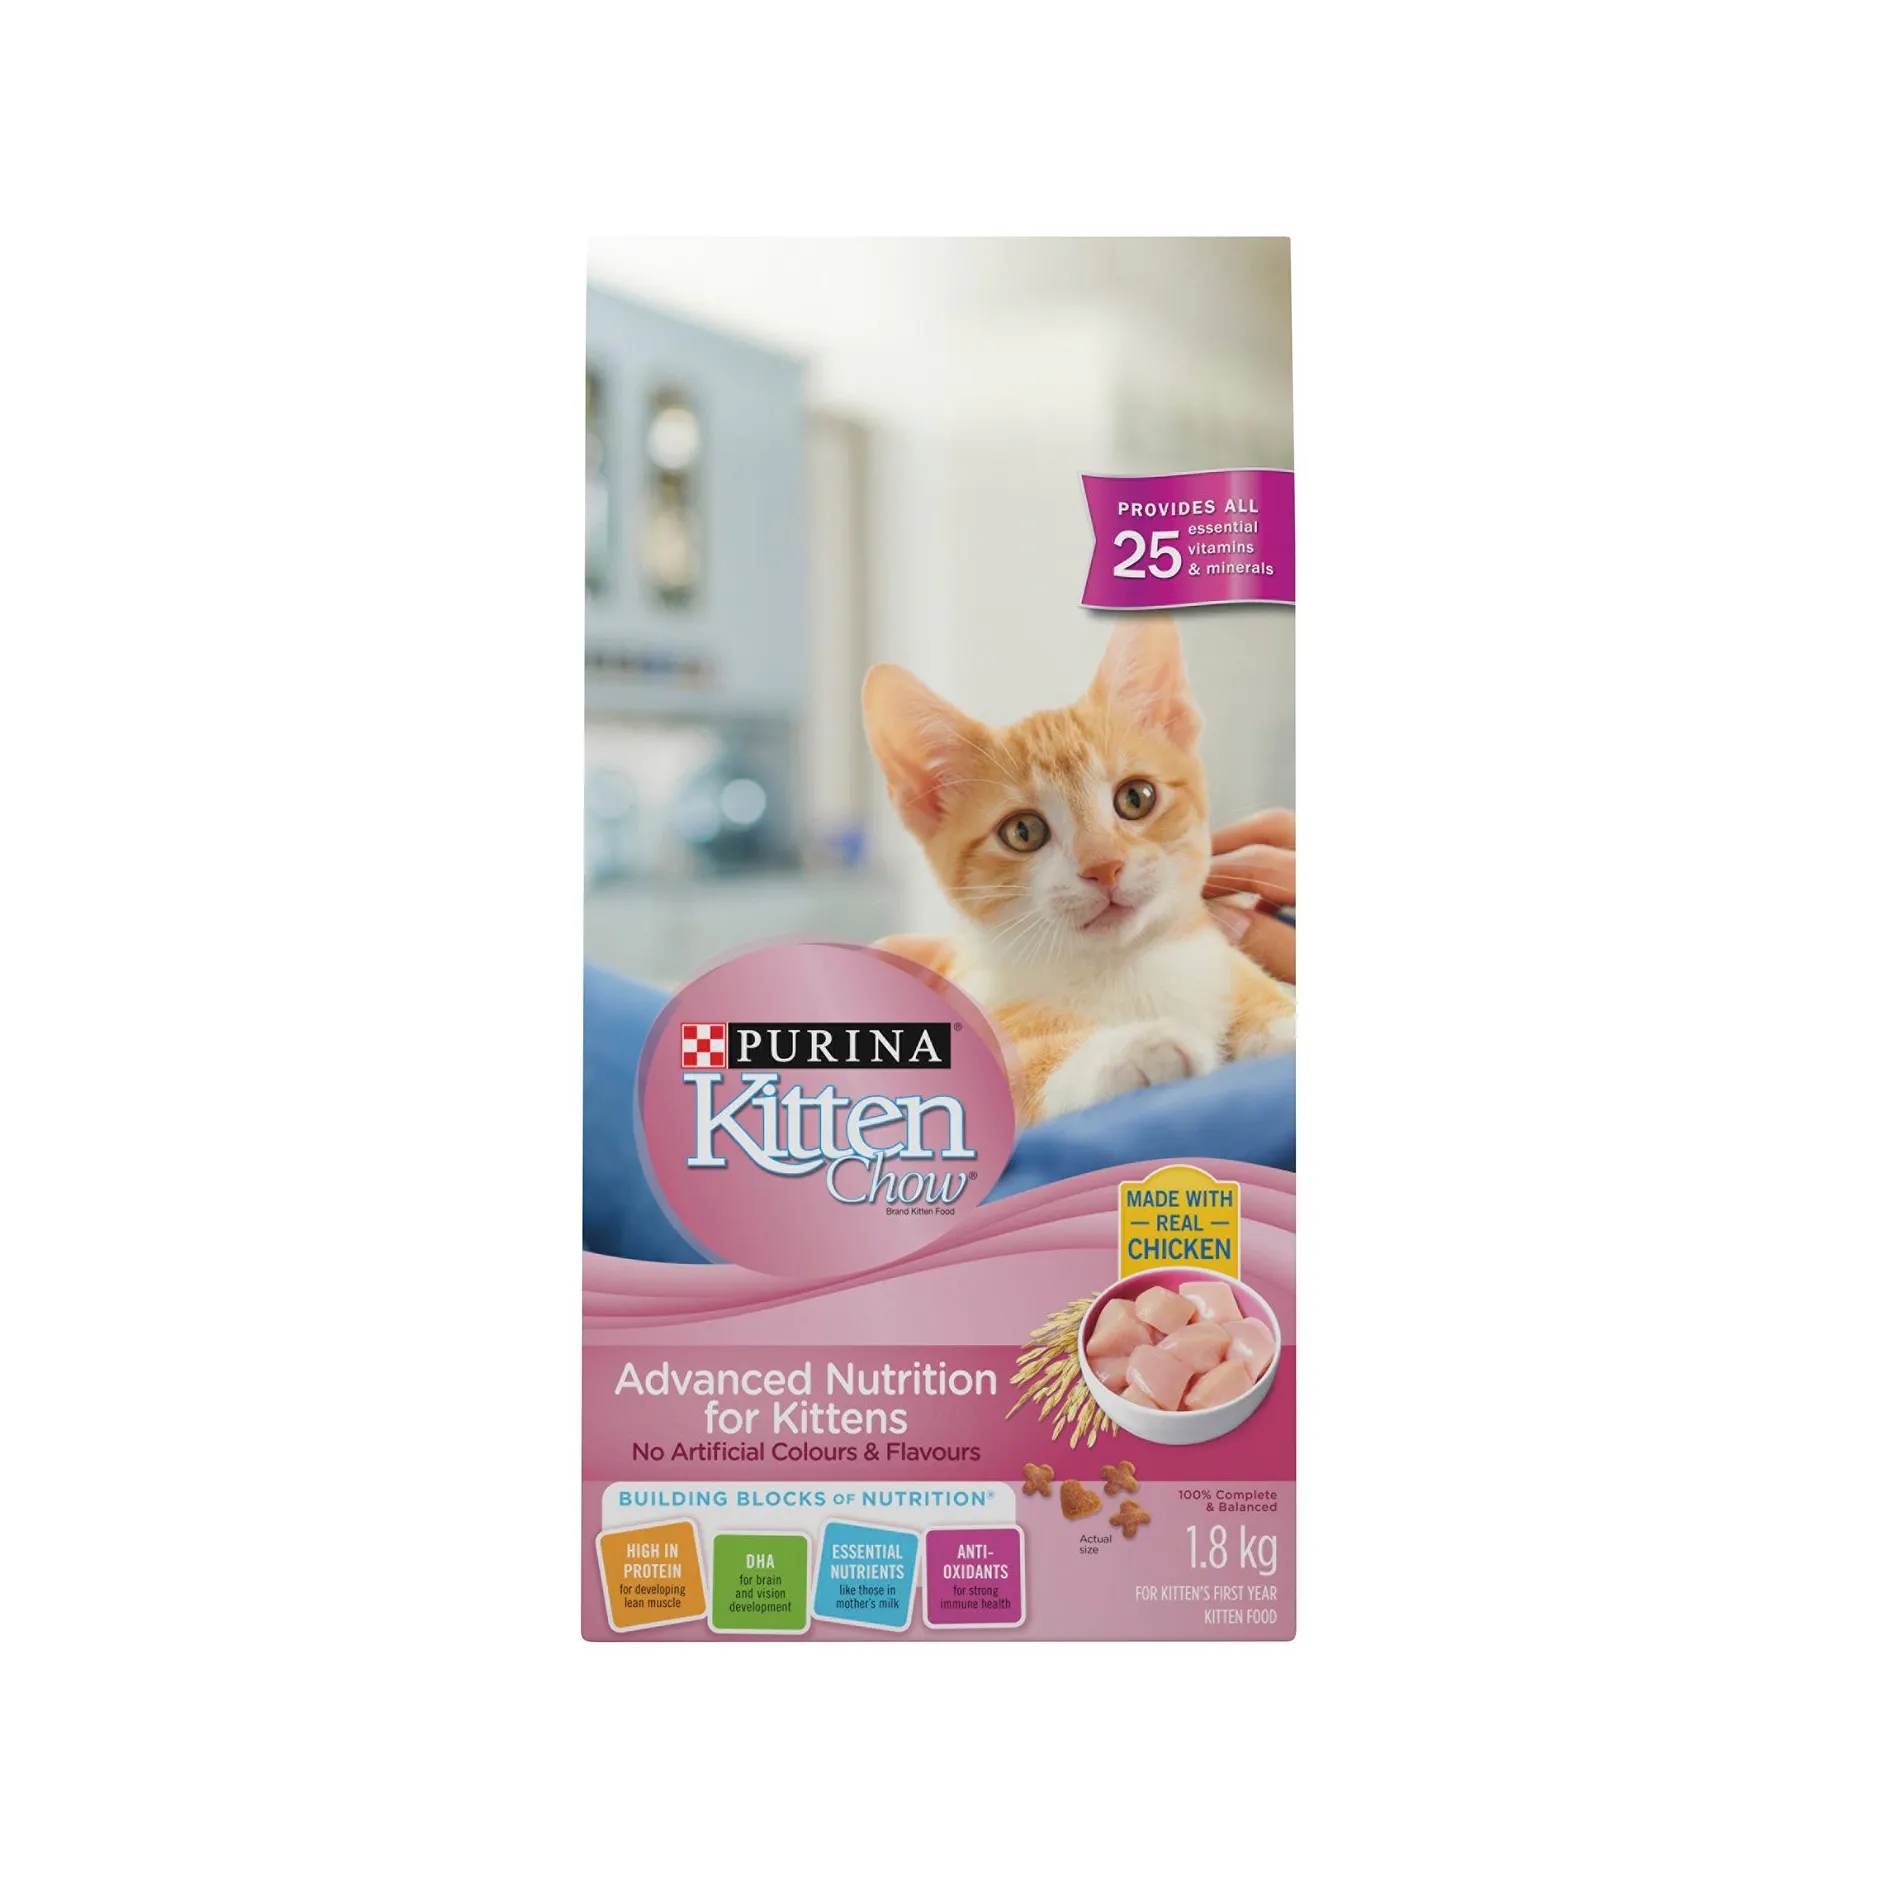 Qualità superiore nestle Kitten Chow Premium qualità per la vendita al miglior prezzo